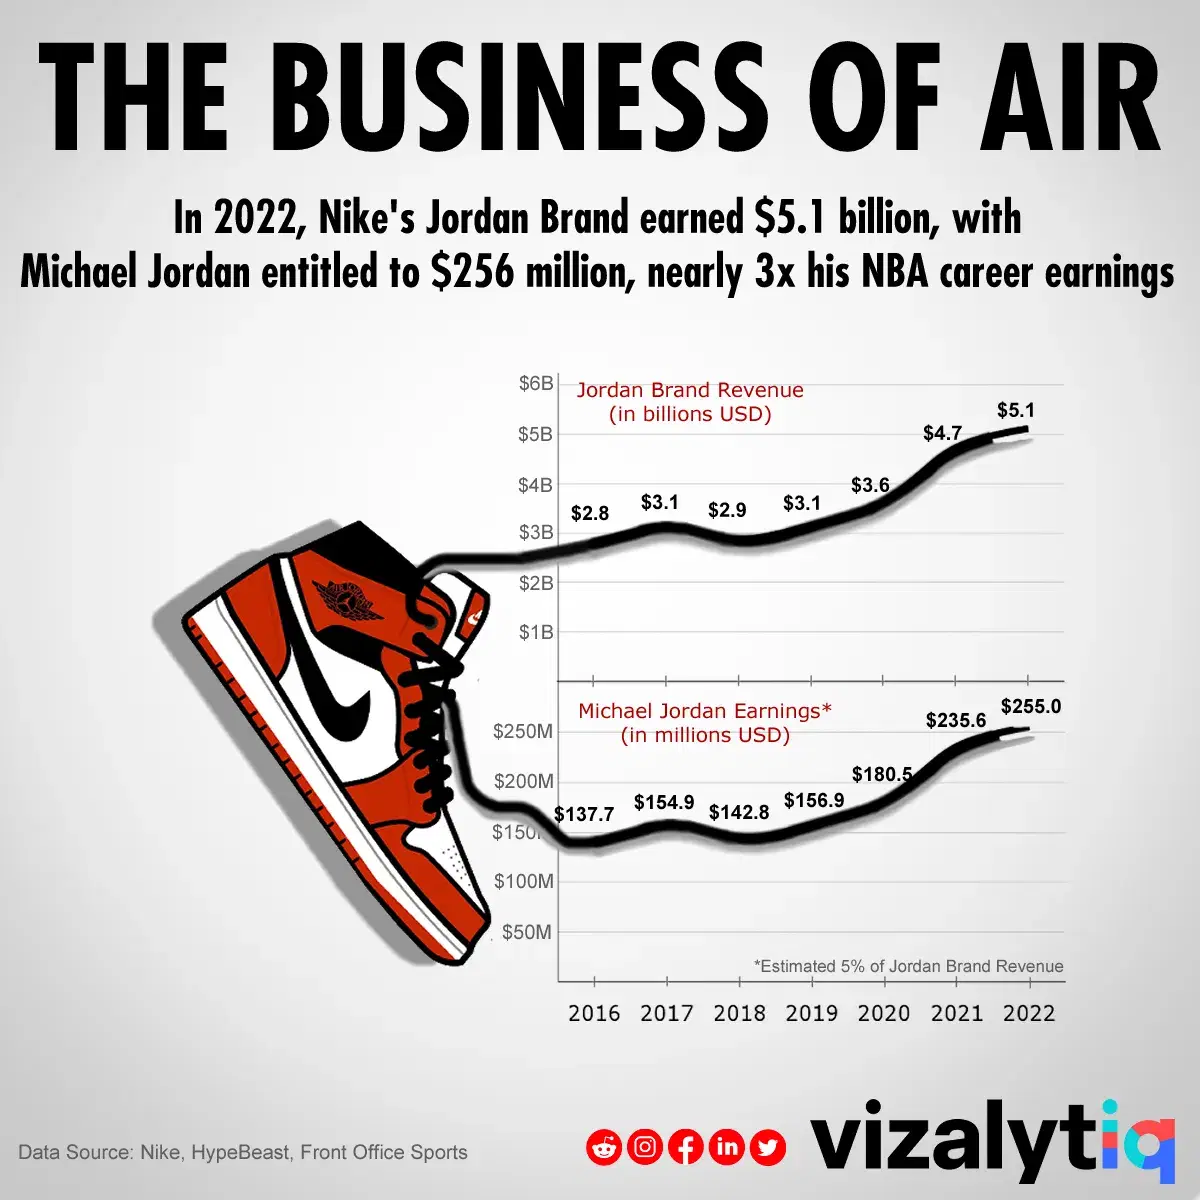 The Business of Air: The Jordan Brand Brings in Billions For Nike and Michael Jordan